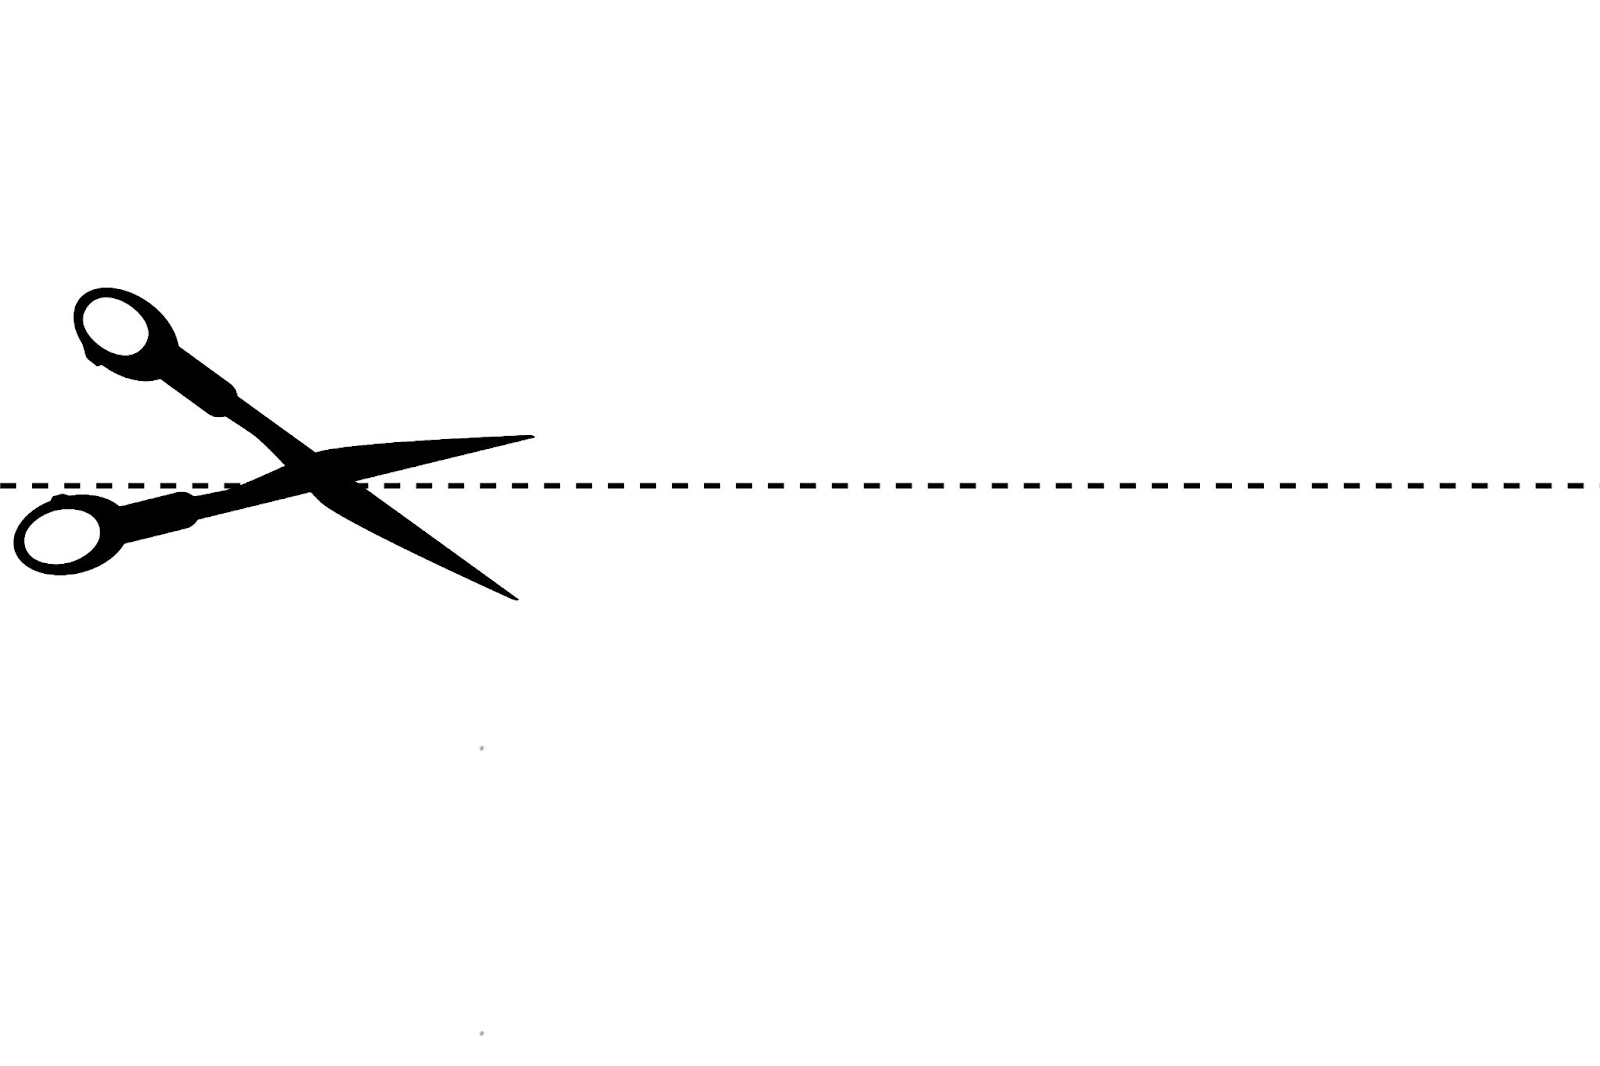 Scissor cutting a dotted line